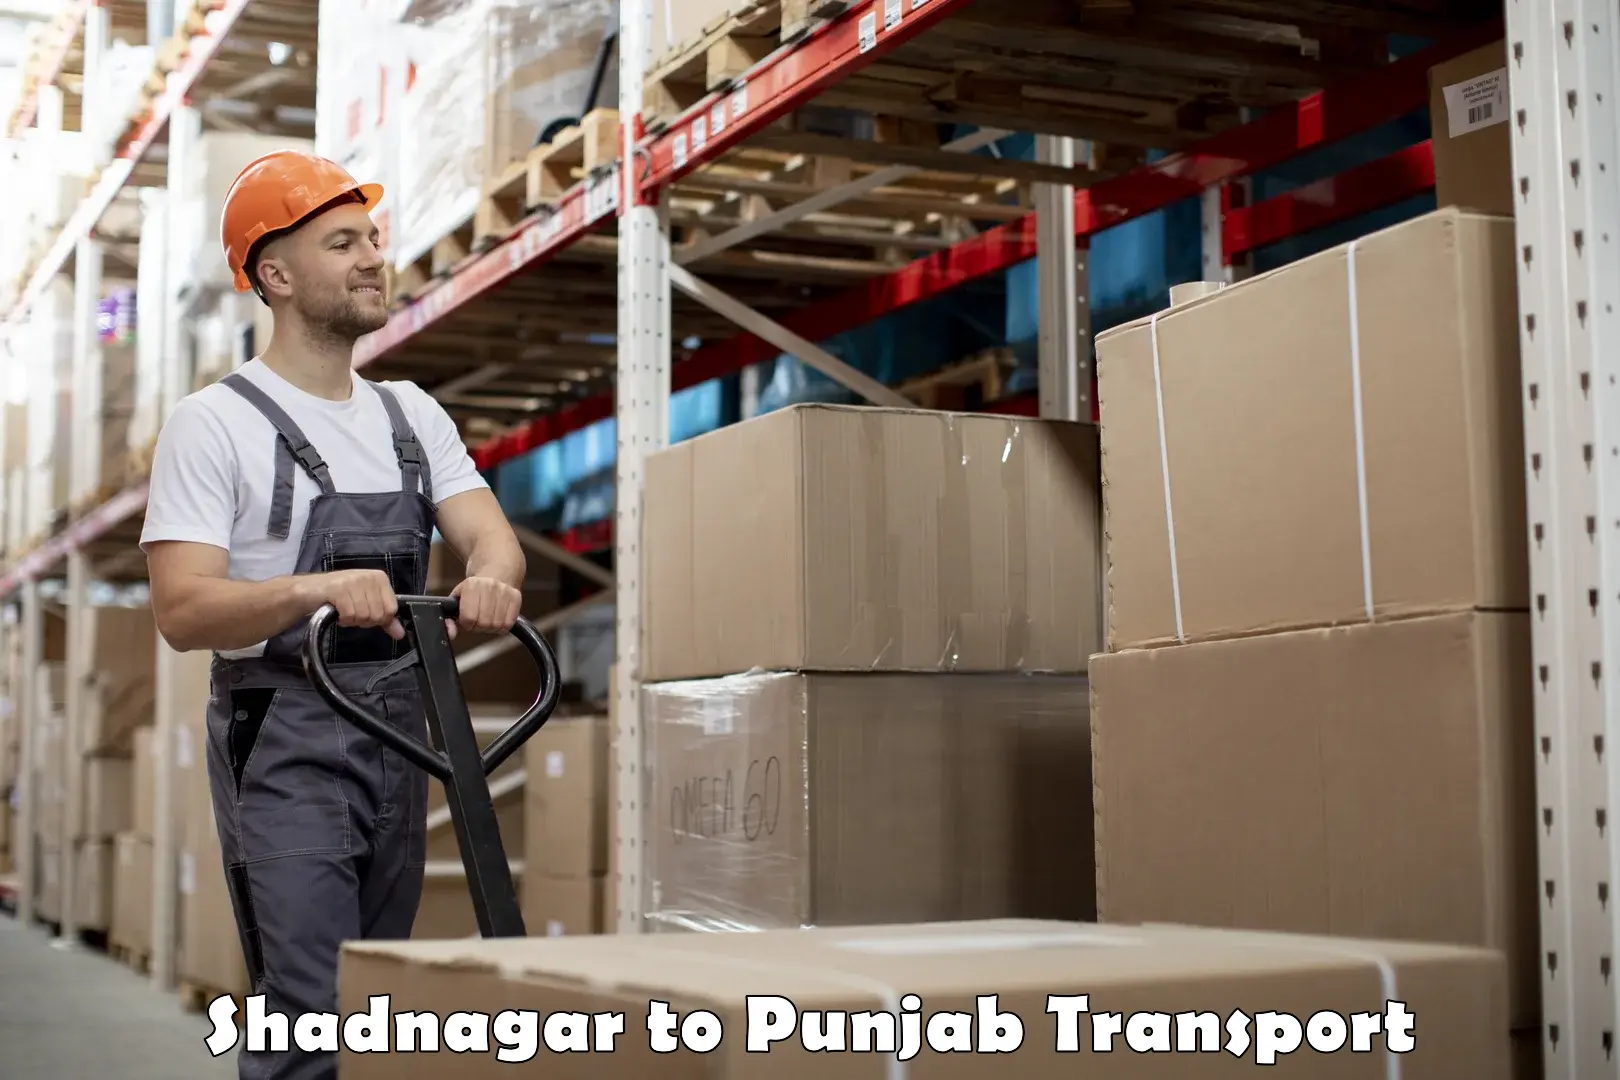 Transport in sharing Shadnagar to Mohali